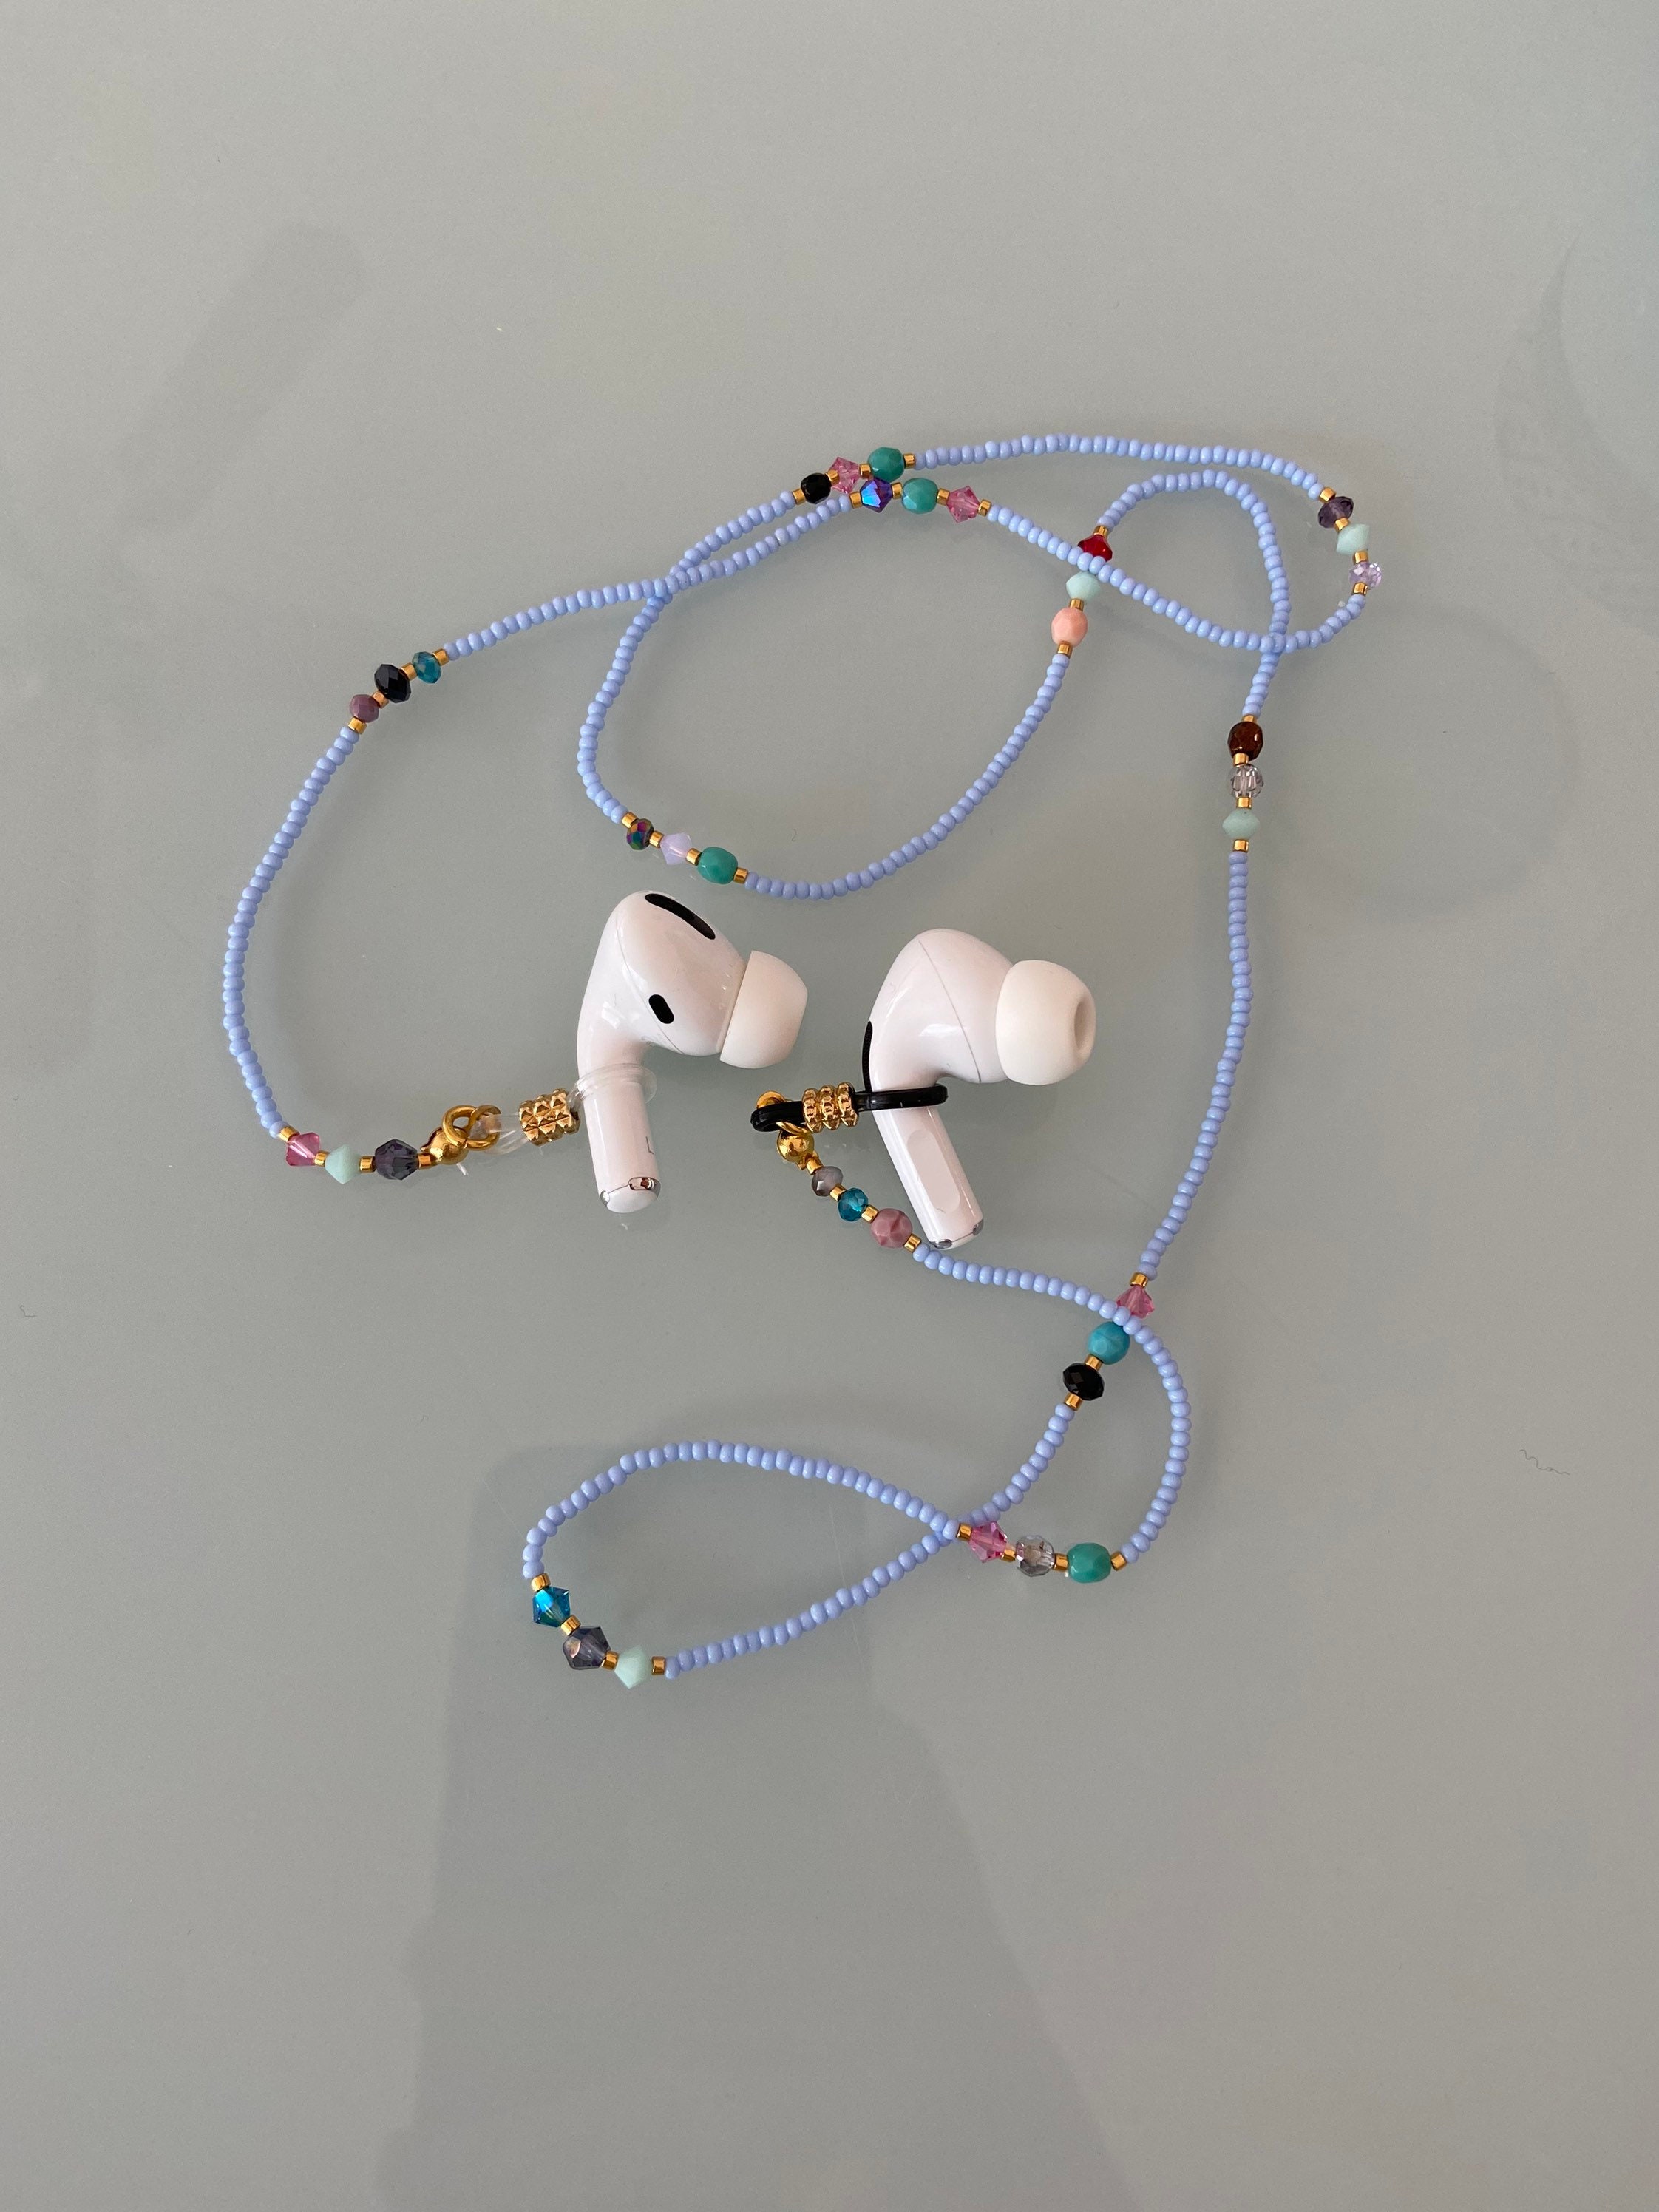 Handmade Glasses Chain, Cotton Yarn Sunglasses Strap, Multicolor